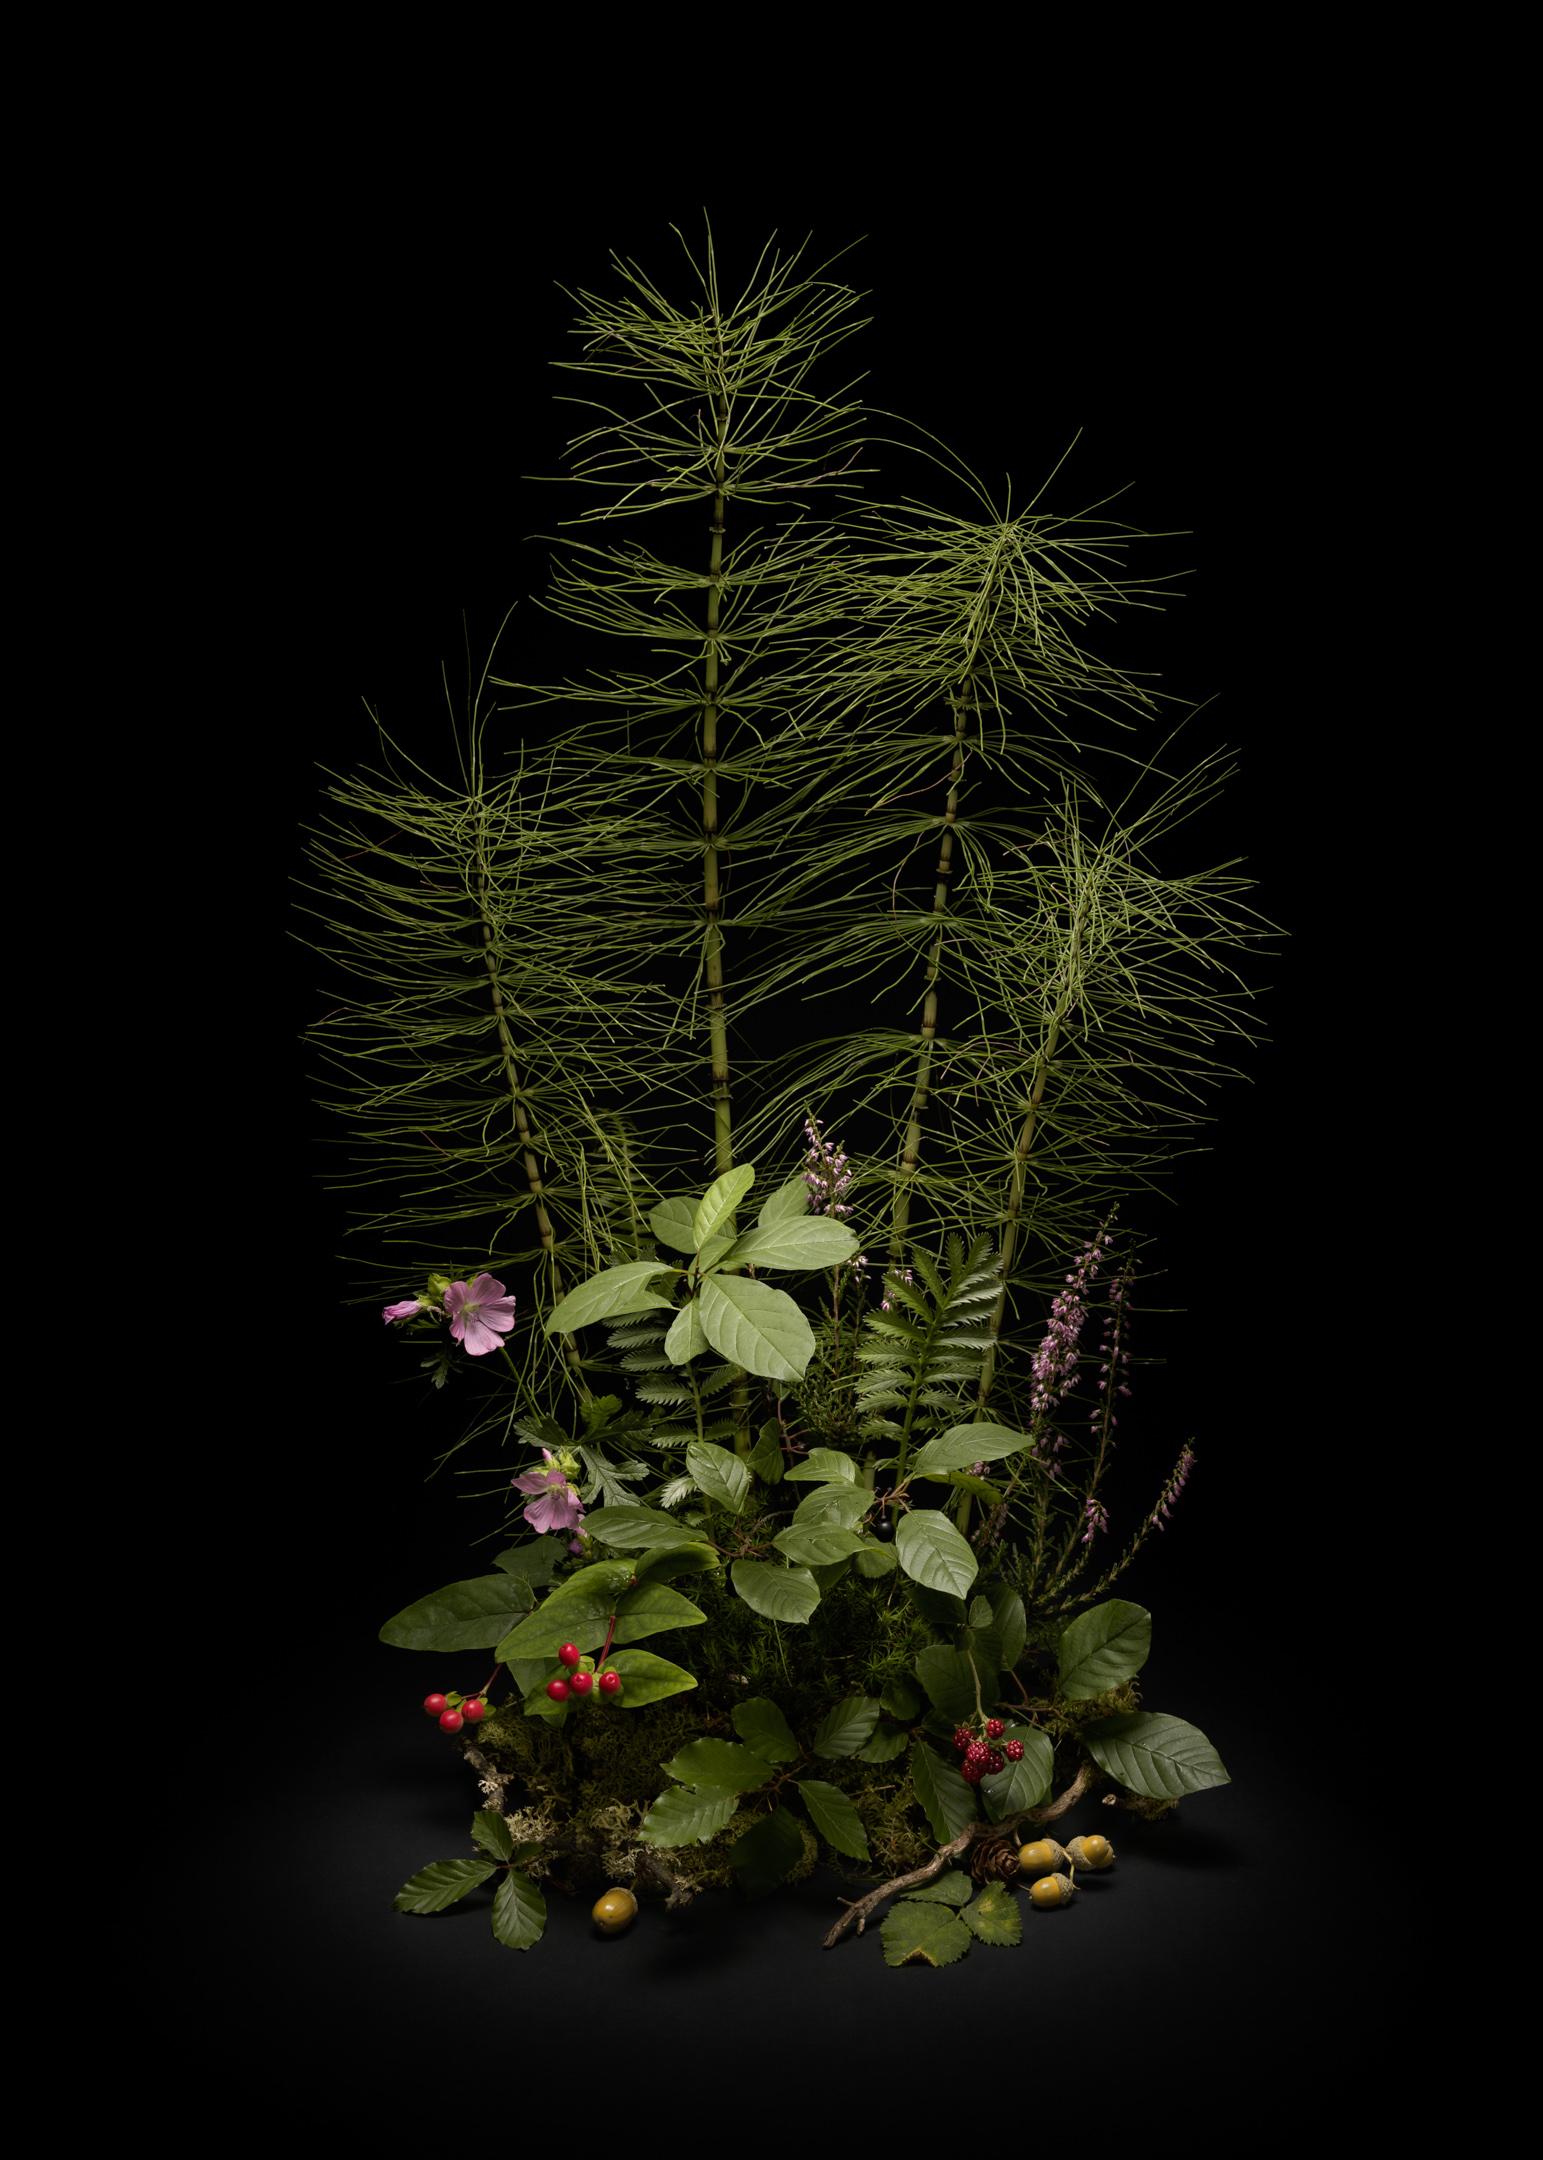 Dunkle Blume #, Schwalbenschwanz, Ein Blumenarrangement aus wilden Pflanzen und Blumen